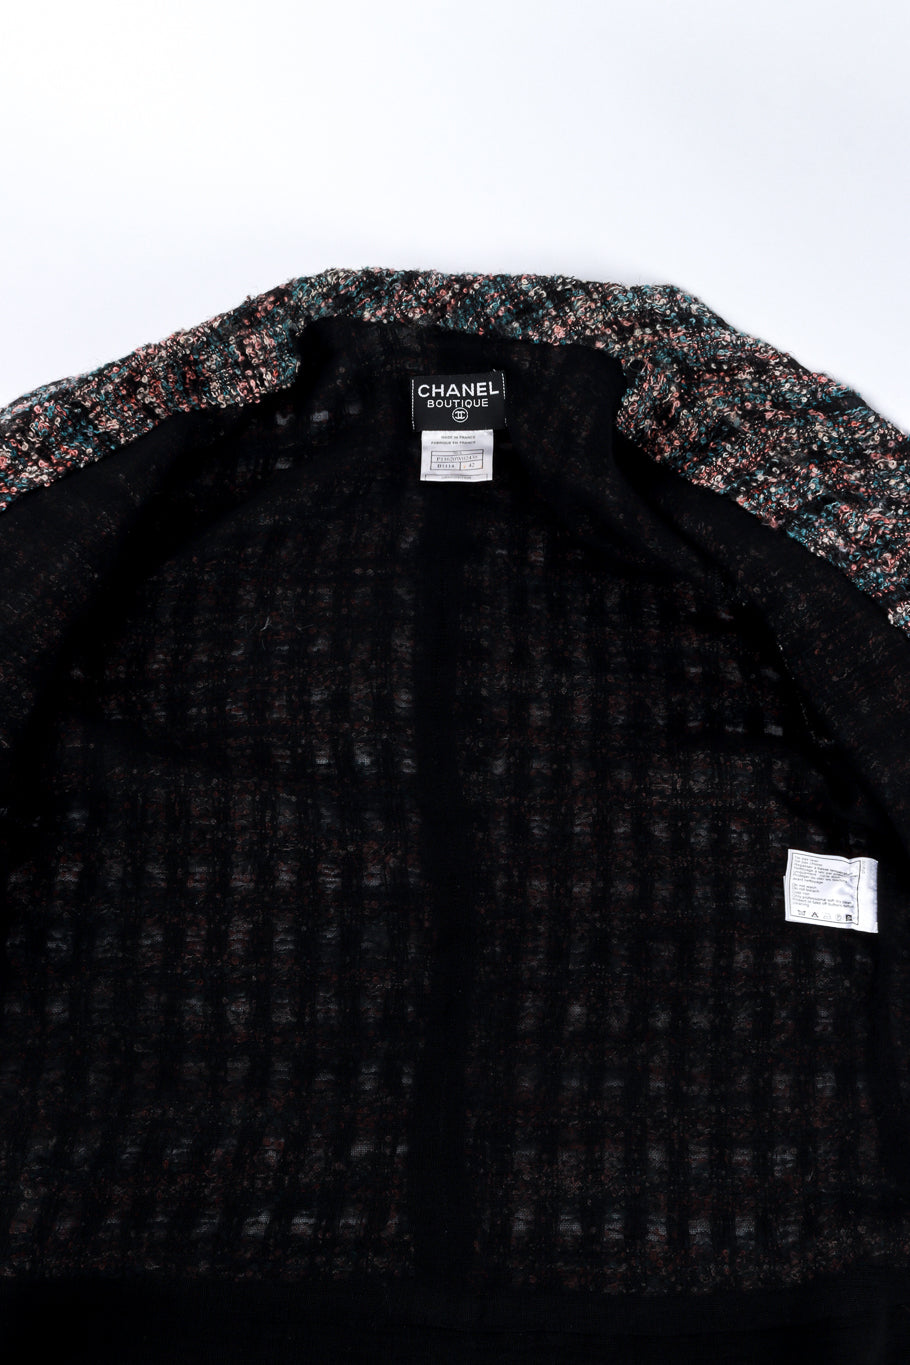 Vintage Chanel Bouclé Plaid Wool Coat view of lining @recess la